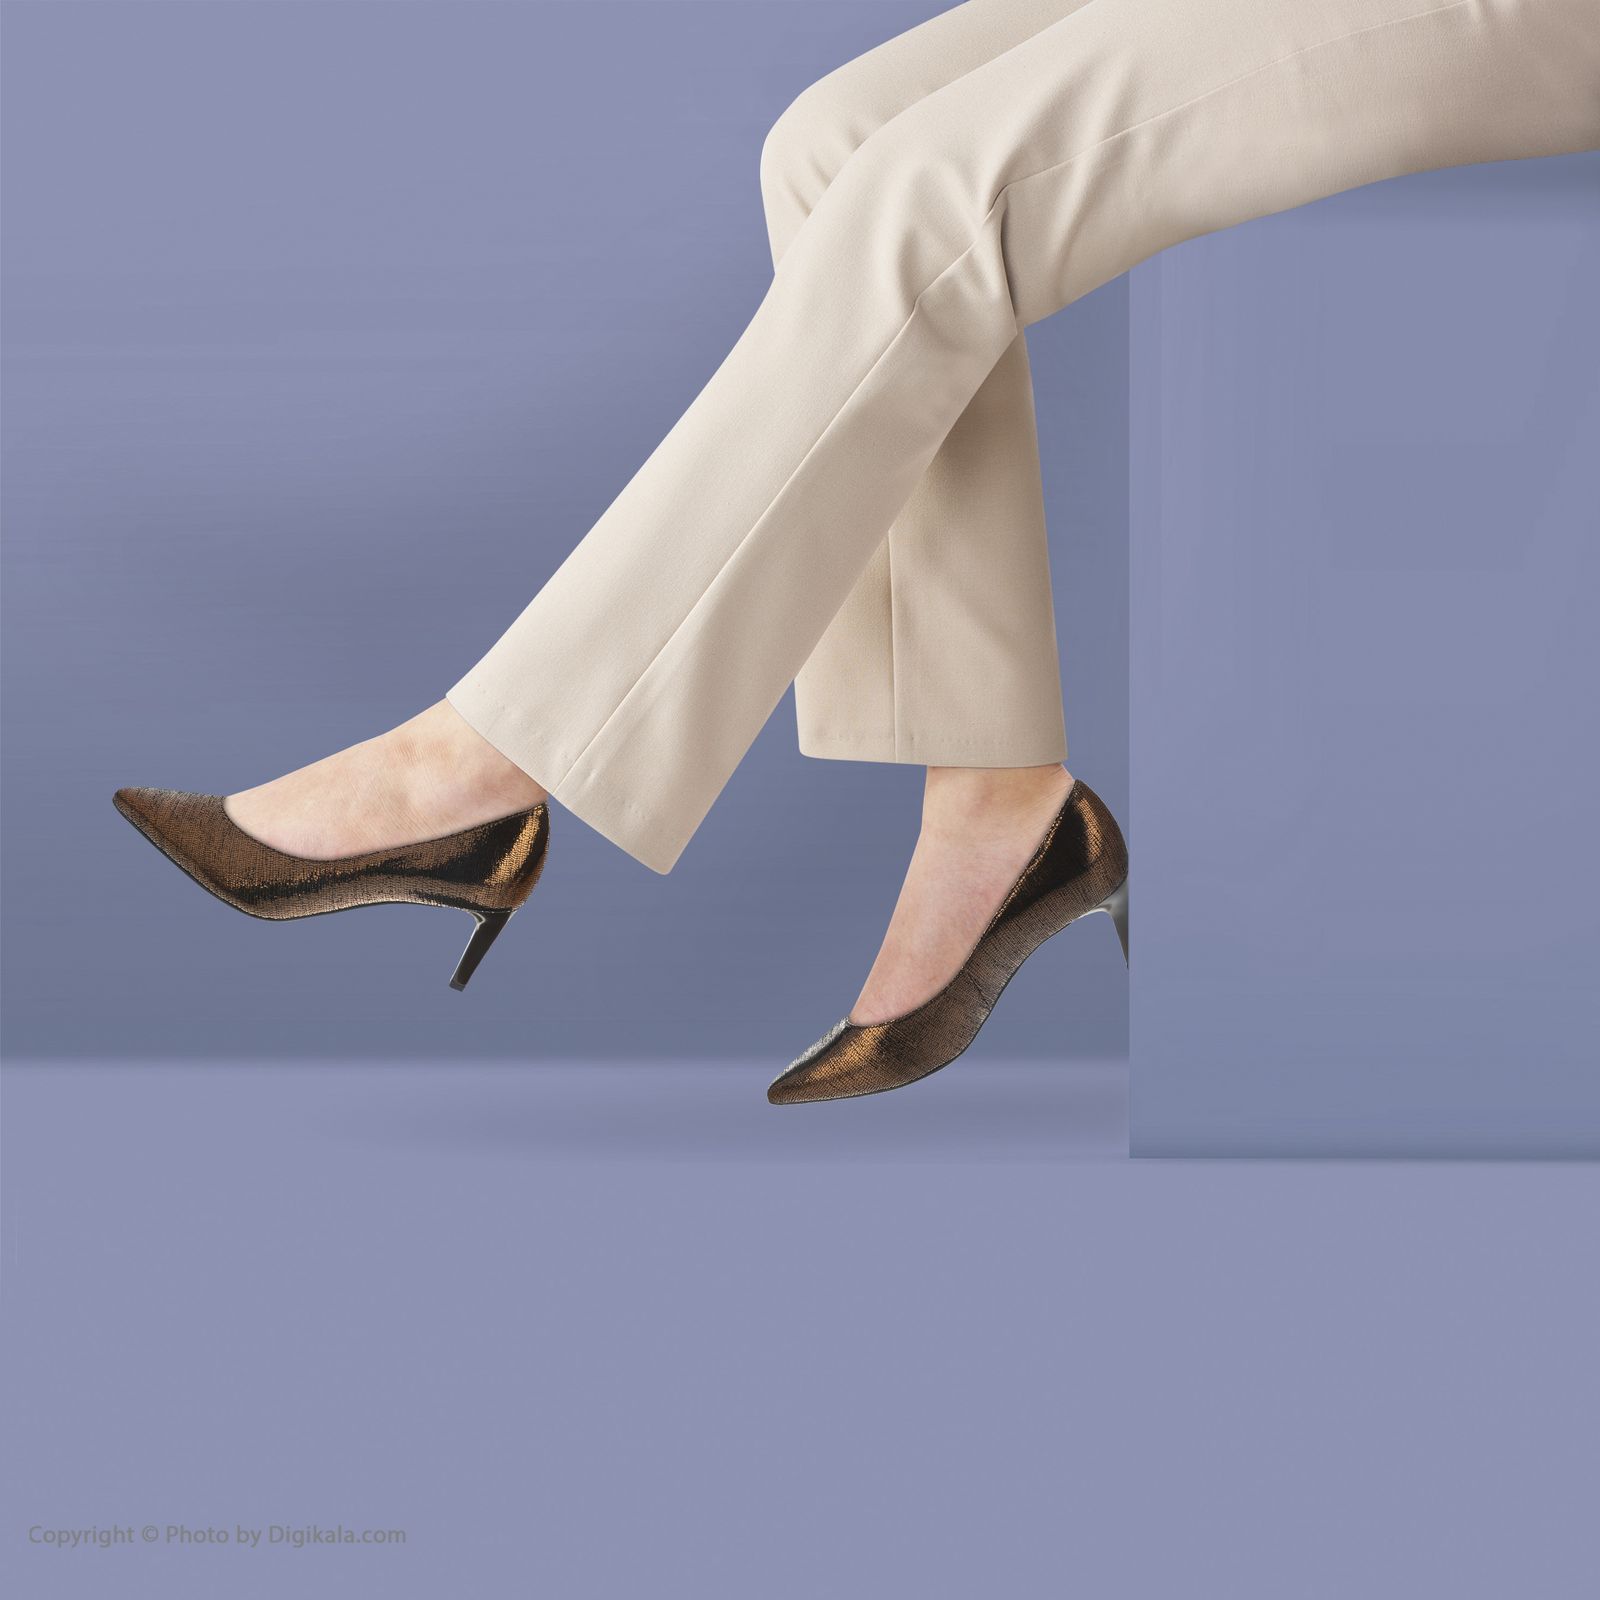 کفش زنانه هوگل مدل 4-106701-7000 - برنز - 2